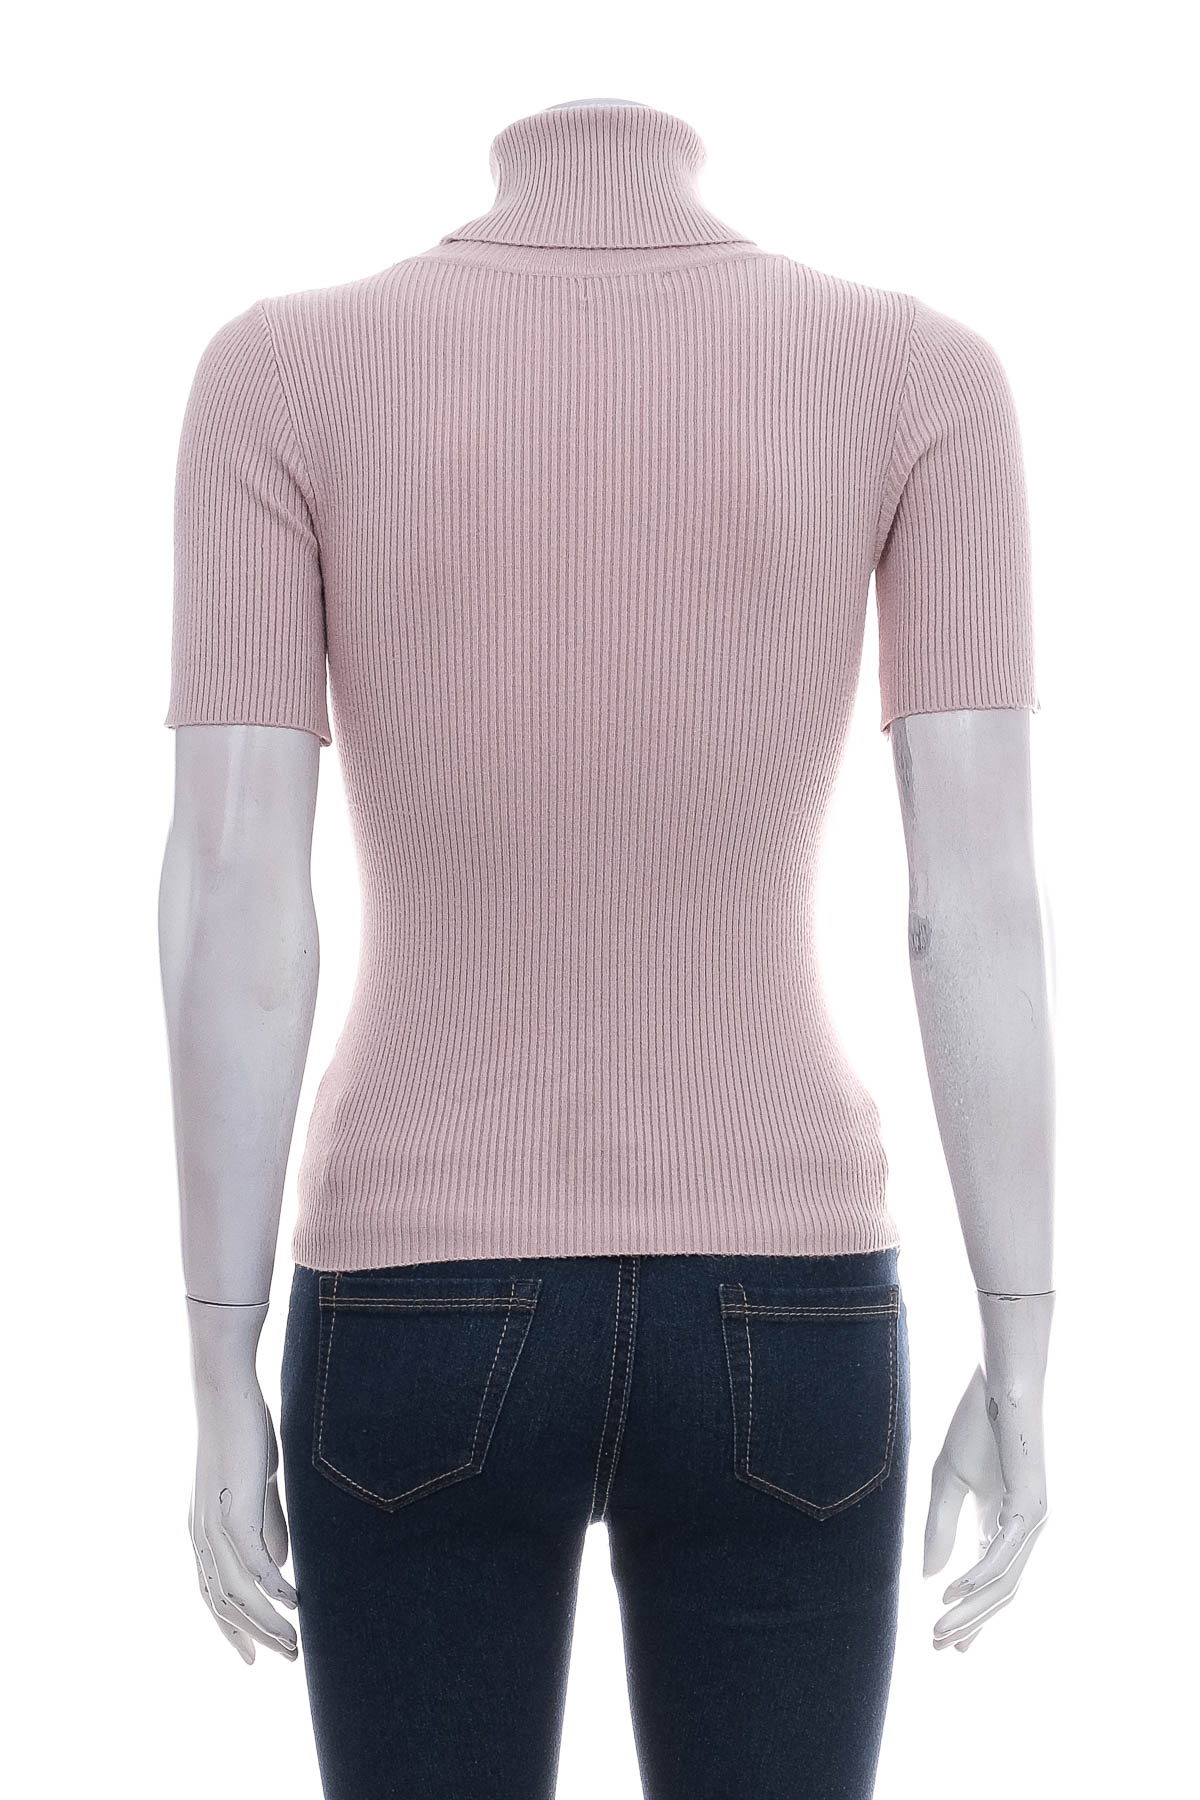 Women's sweater - Valleygirl - 1